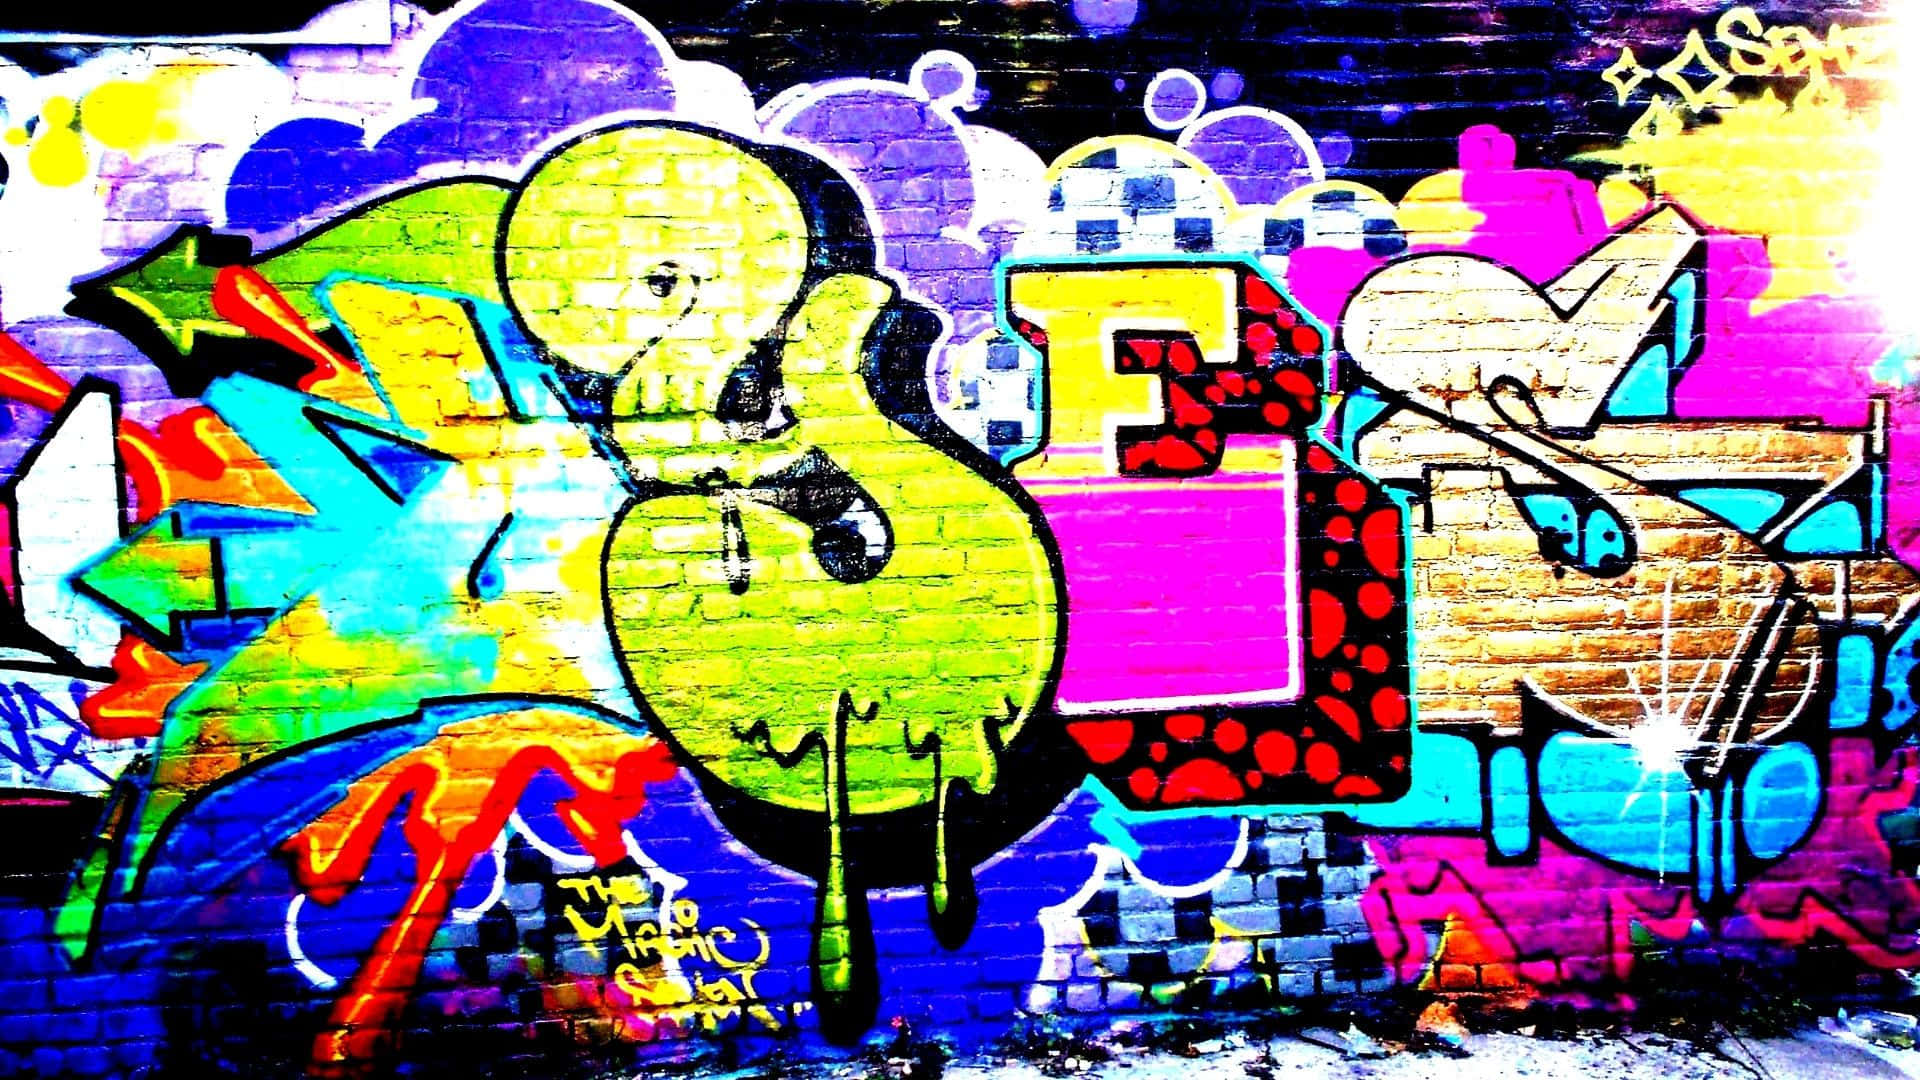 Baggrundmed Graffiti-væg.